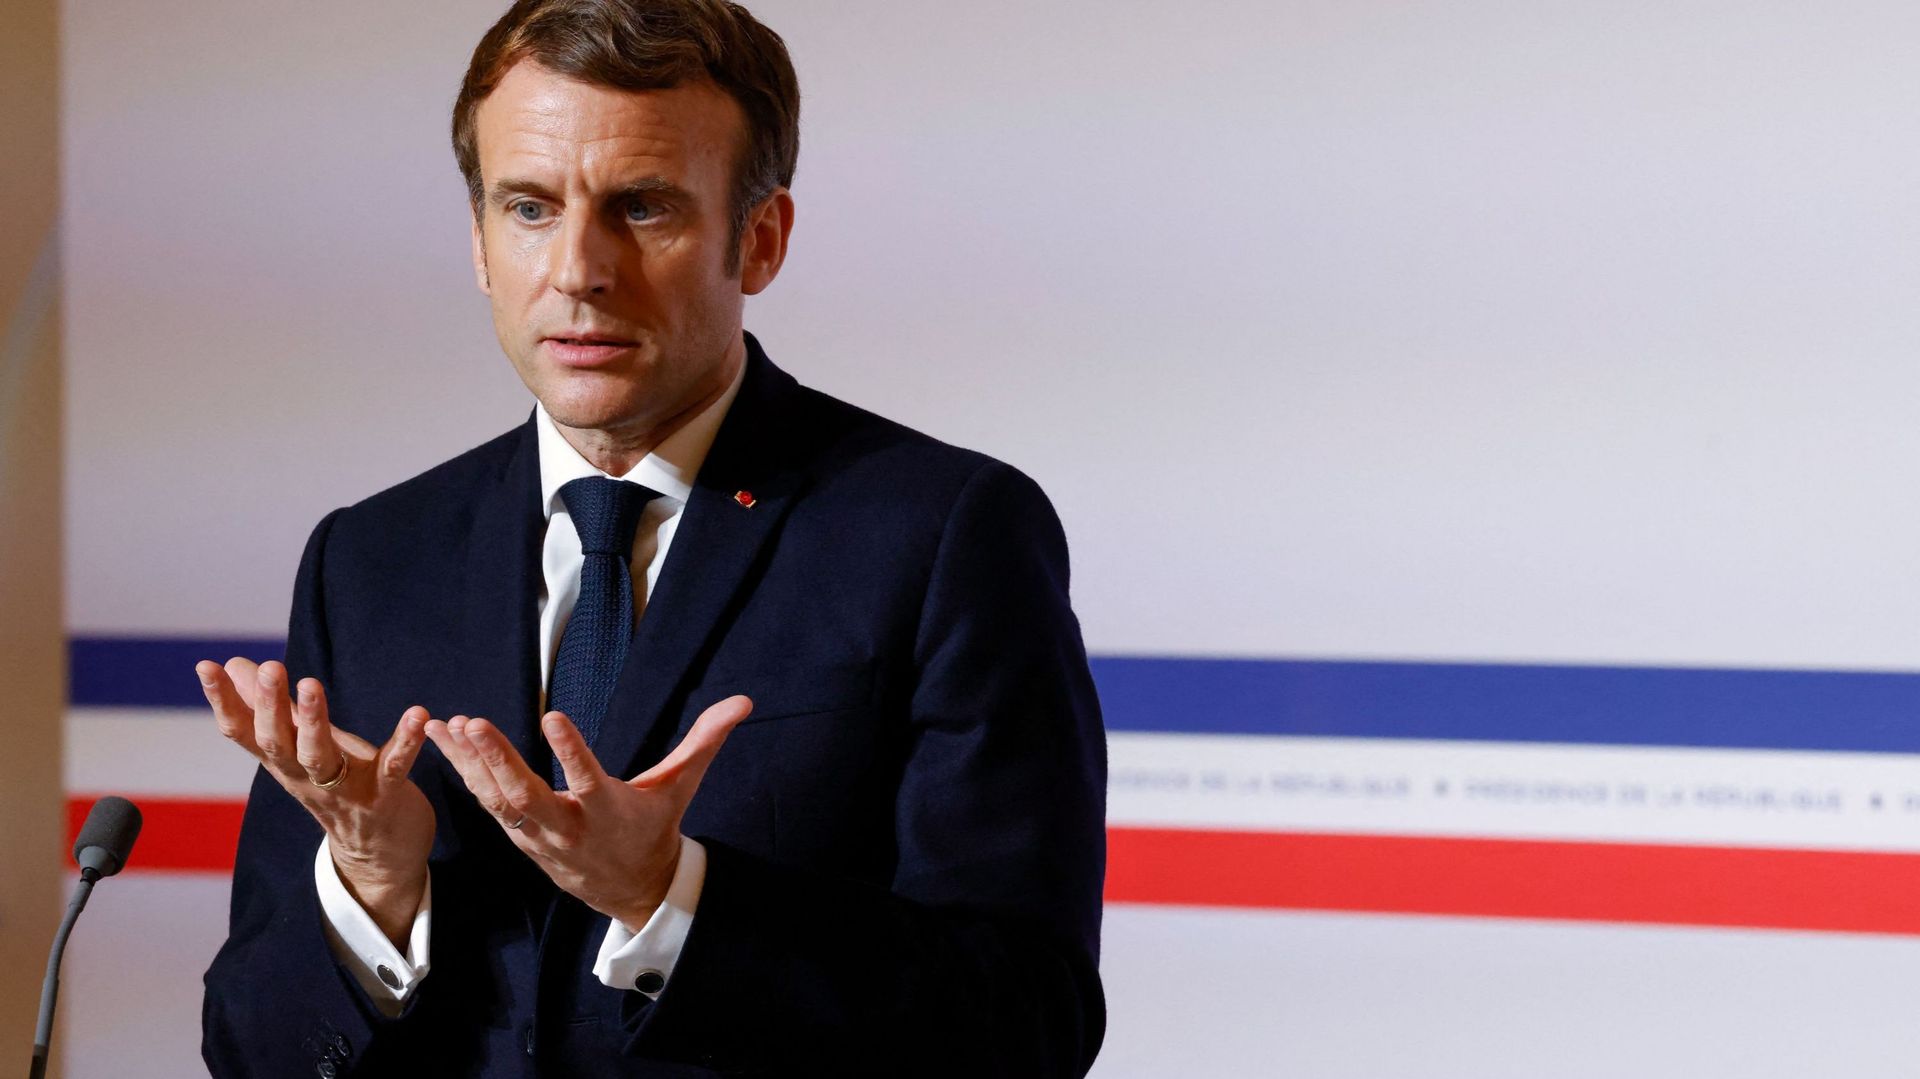 Si le chômage est au plus bas en France, il y aura bien eu un avant et un après 'Covid' pour Emmanuel Macron.